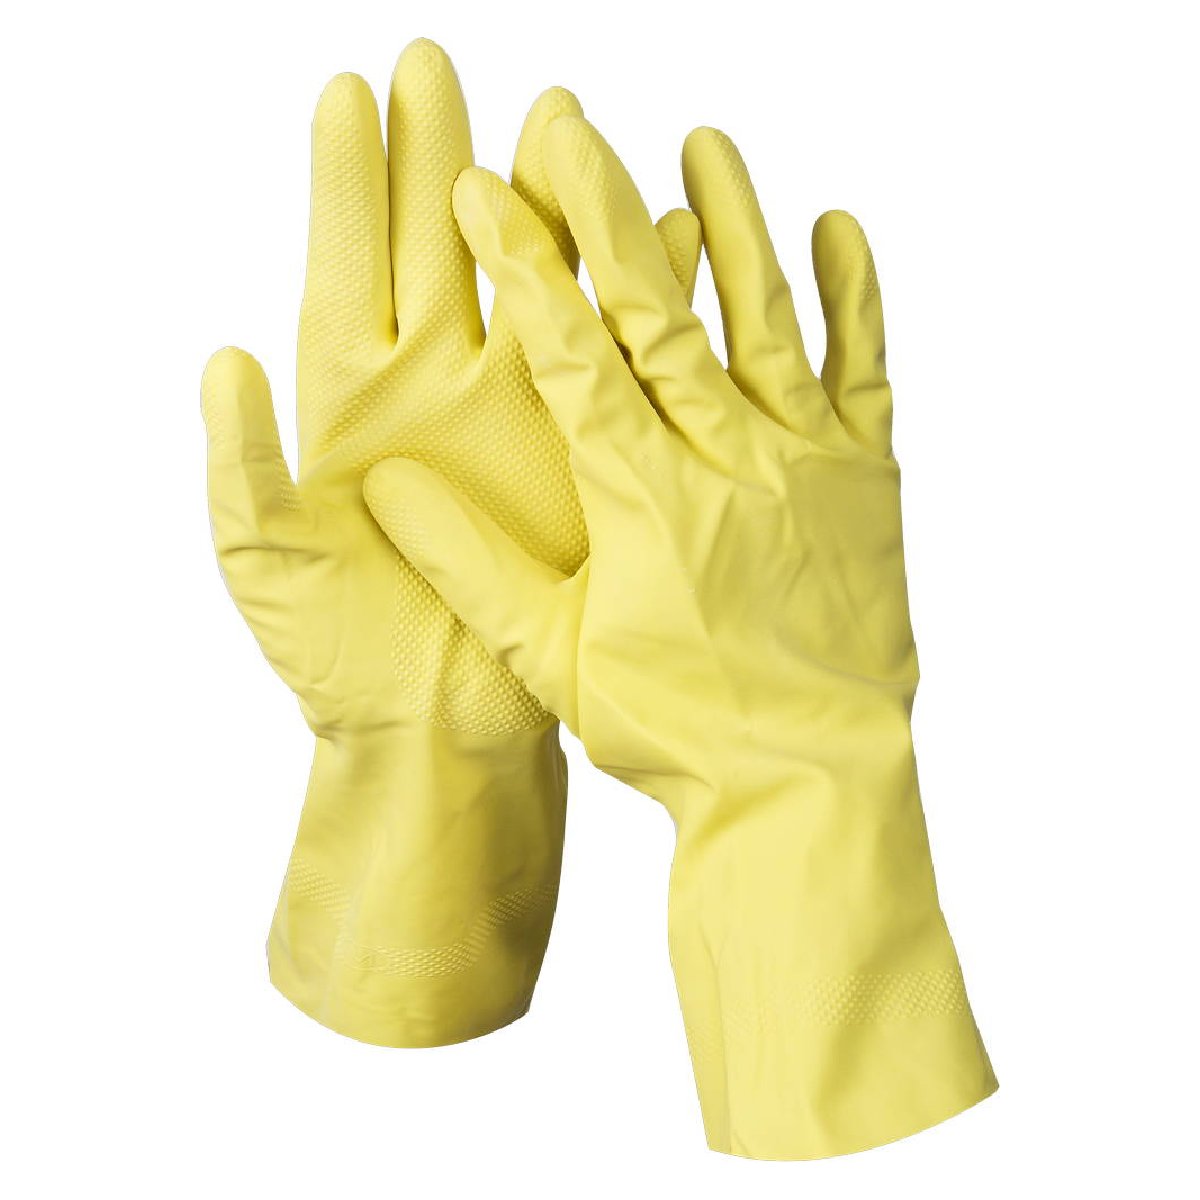 Латексные перчатки DEXX хозяйственно-бытовые р. XL с х б напылением рифленые (11201-XL)Купить